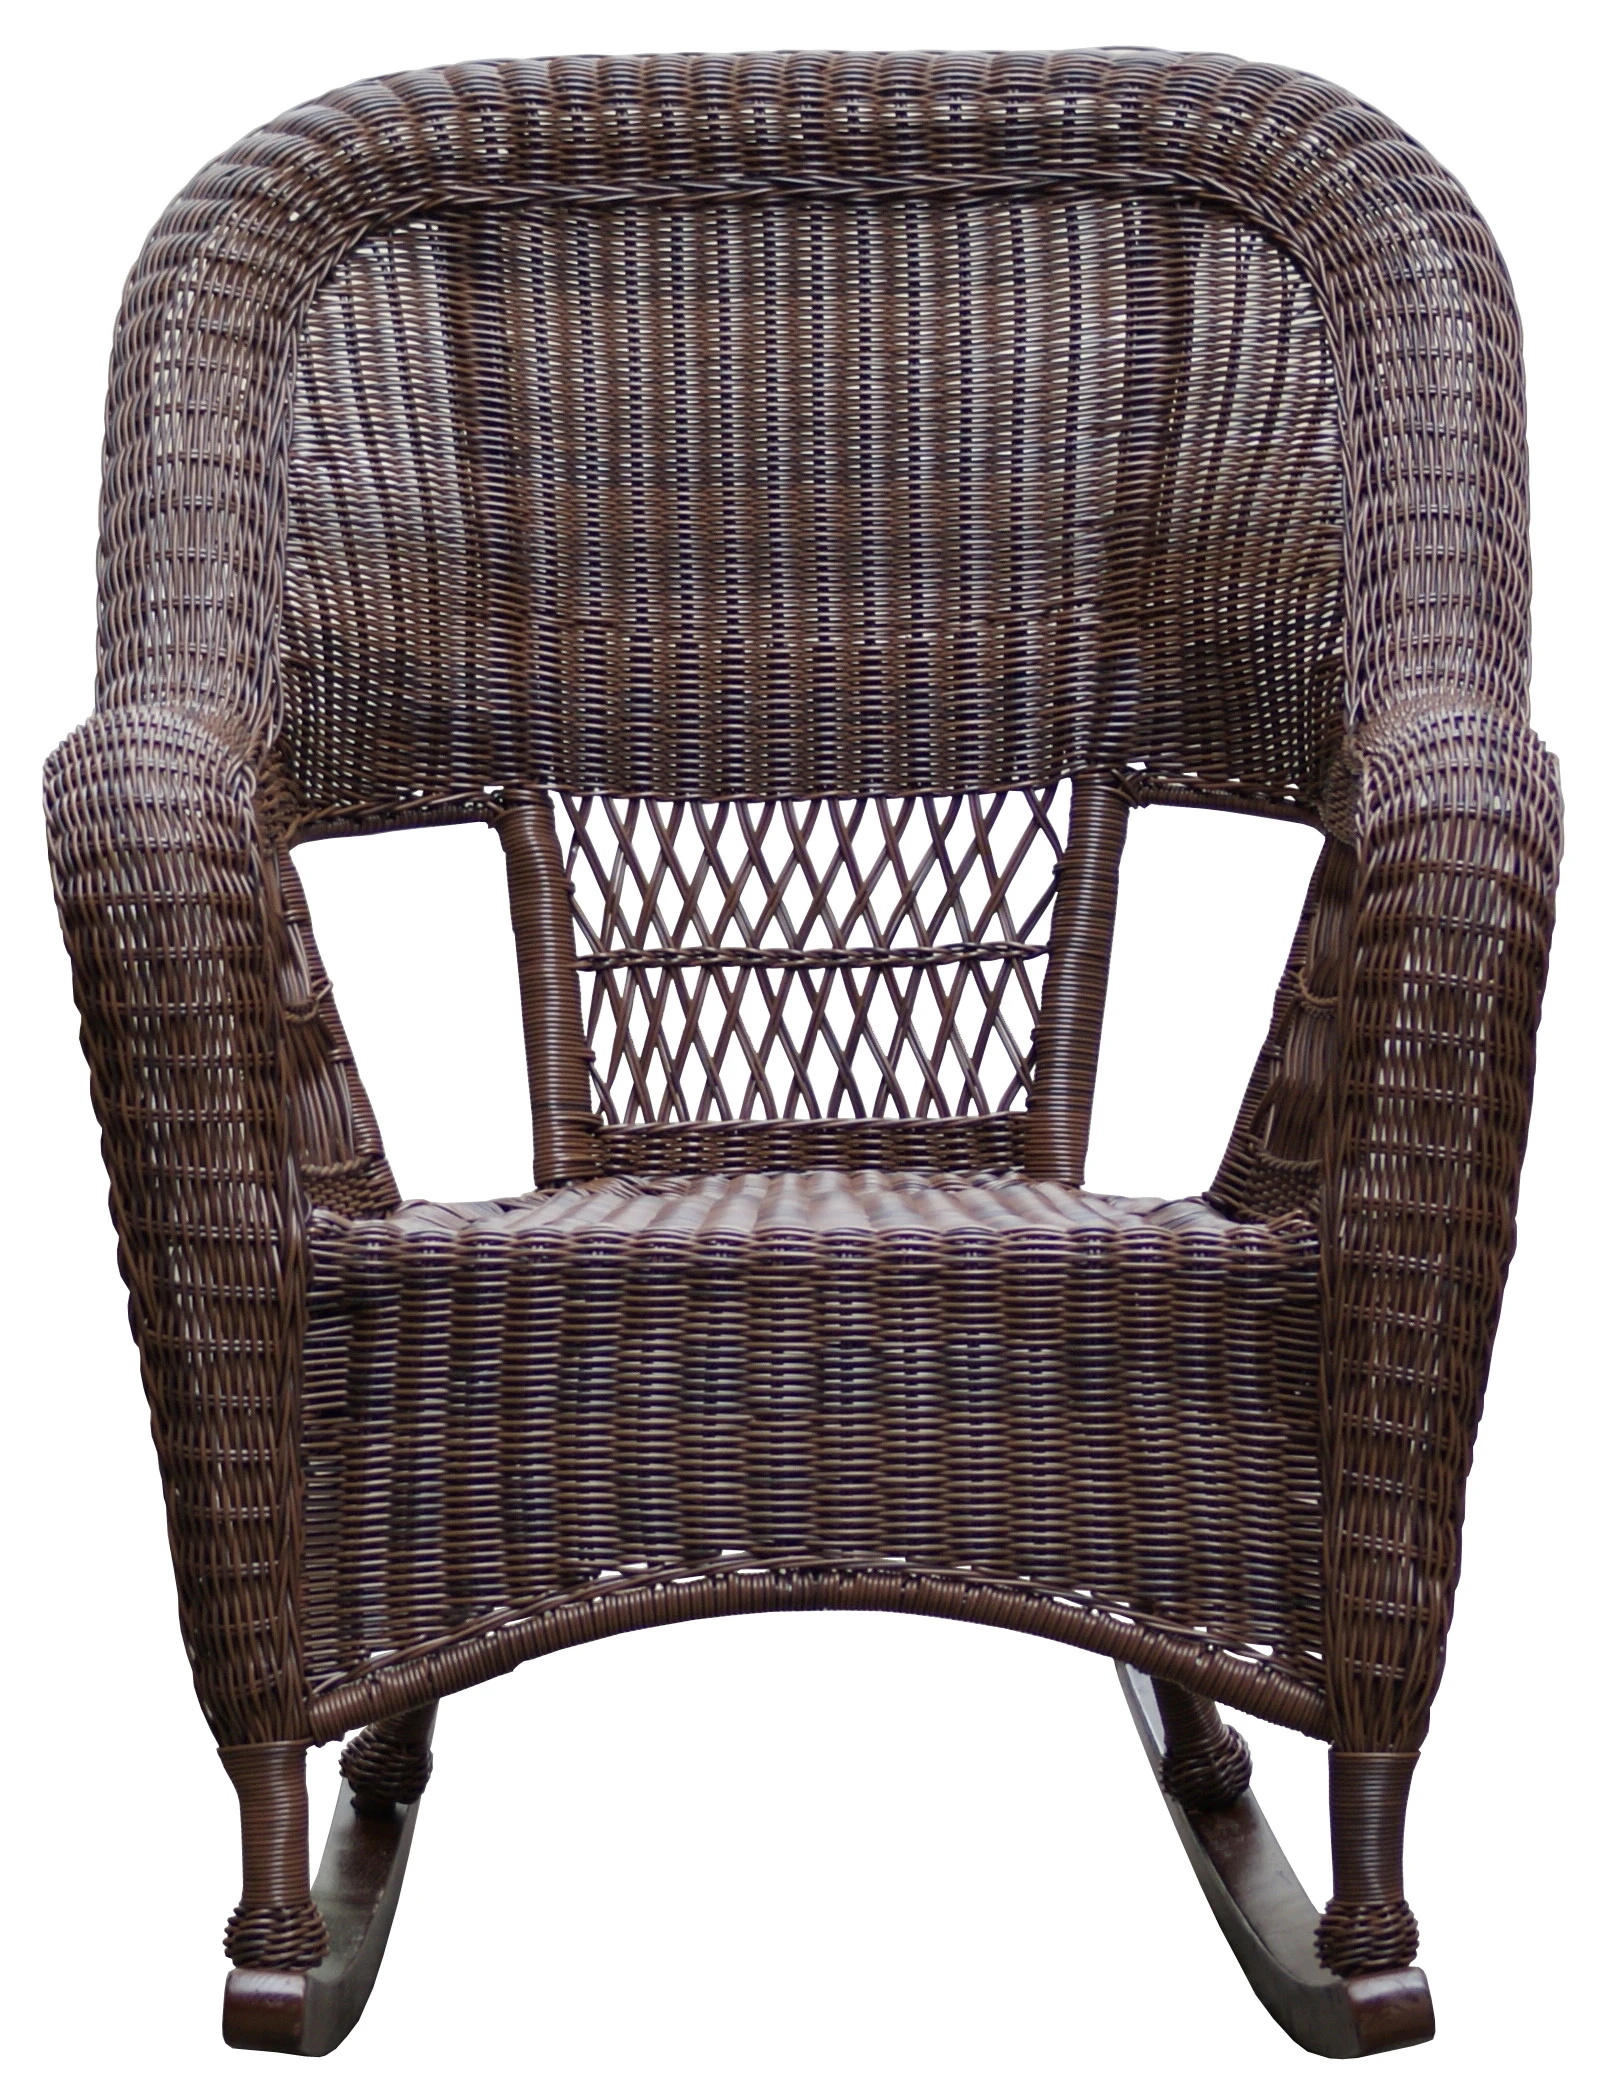 Outdoor furniture wicker rocking garden chair